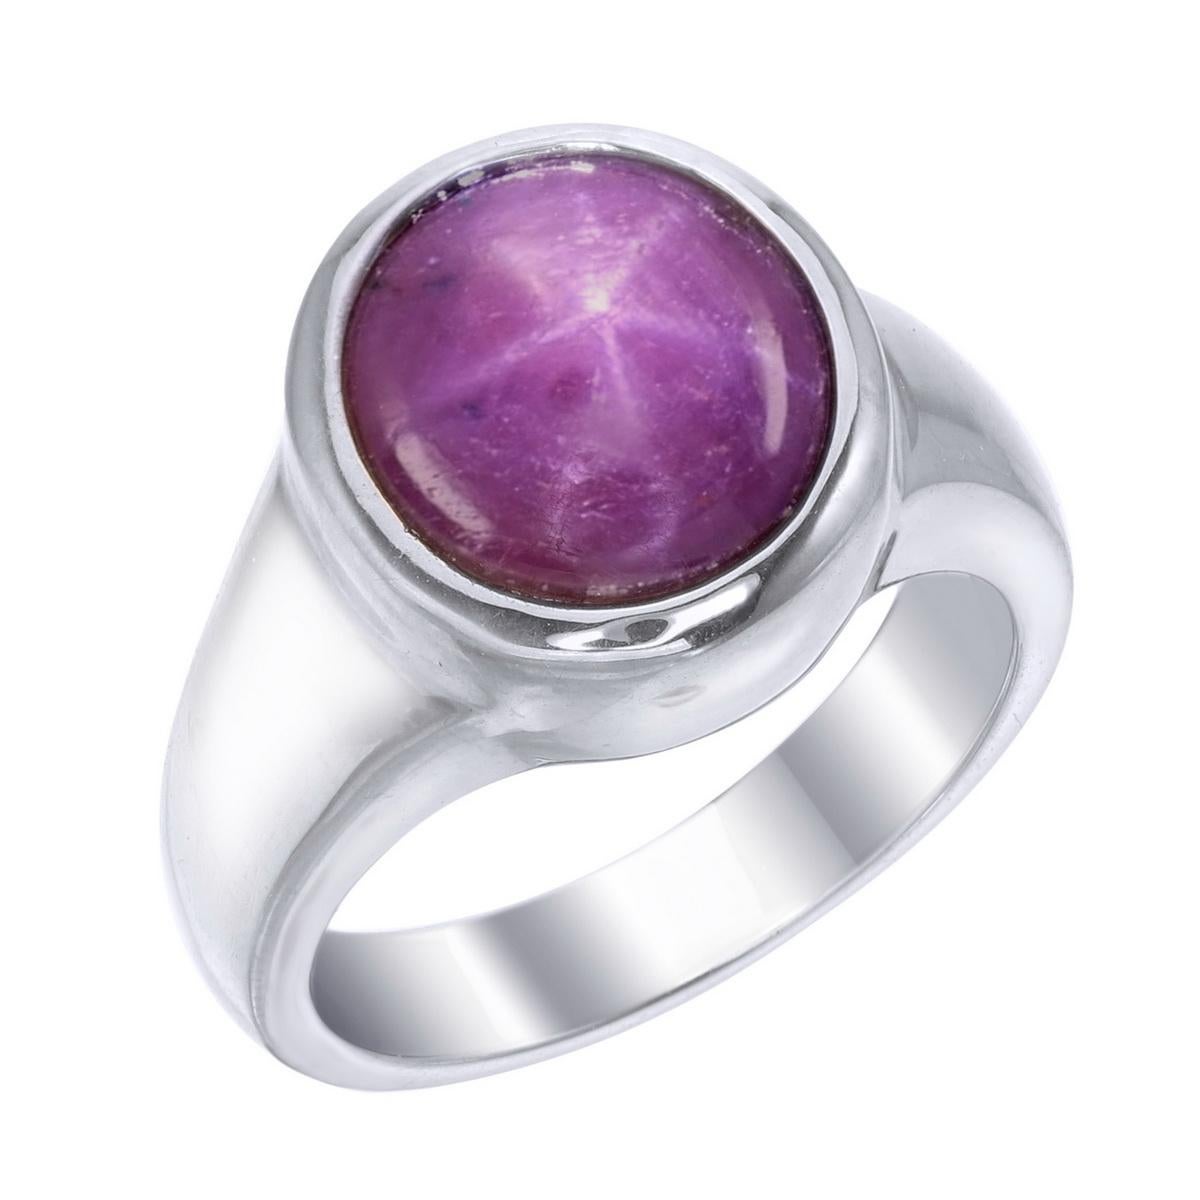 Orloff of Denmark; 8,76 Karat Sternrubin Silberring.
Dieser Ring ist Teil eines dreiteiligen Sets mit atemberaubenden Rubinen, die mit einem außergewöhnlichen Sterneffekt versehen sind. 
Das sternförmige Phänomen, das als 